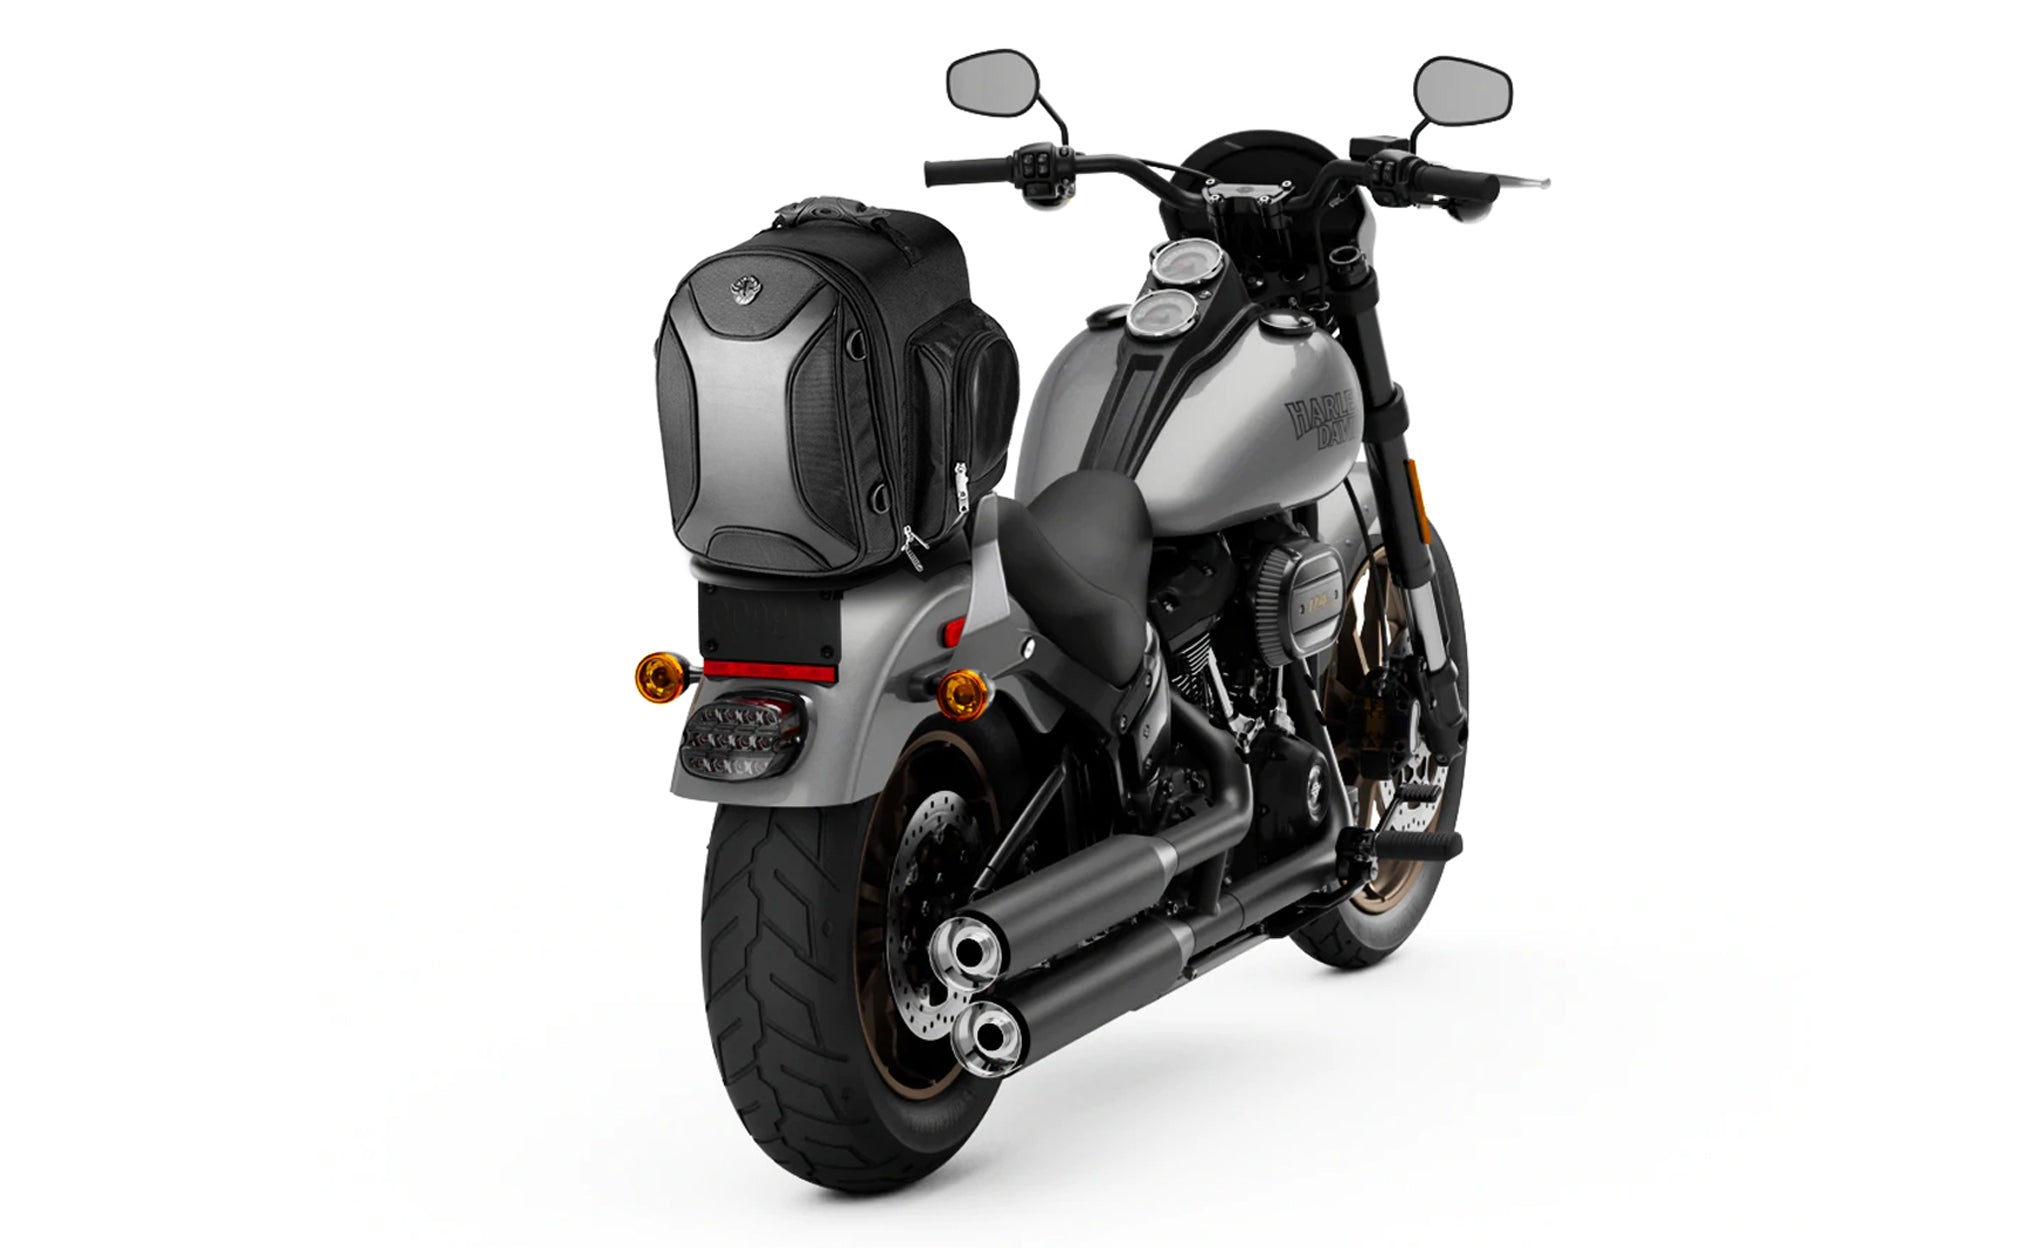 Viking Dagr Small Kawasaki Motorcycle Sissy Bar Bag Bag on Bike View @expand